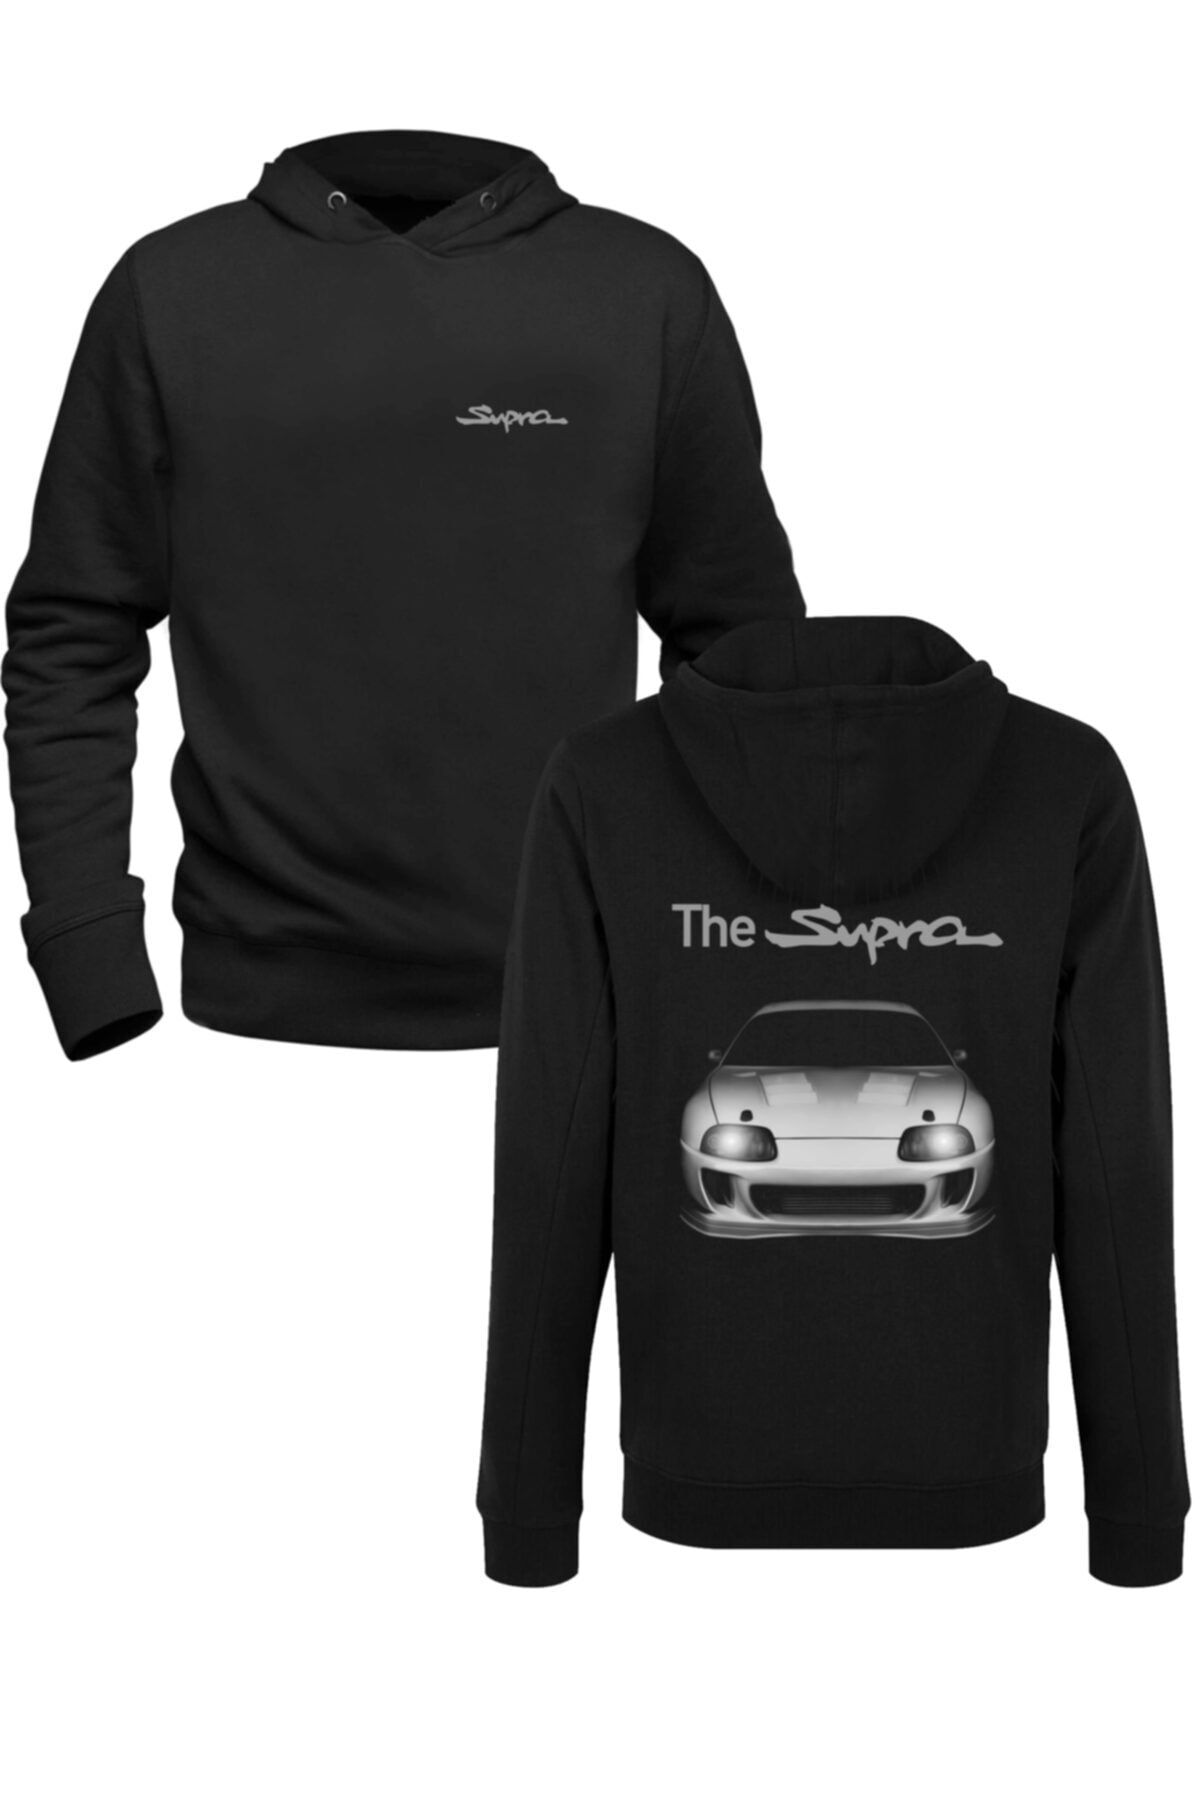 Alfa Tshirt Araba Toyota Supra Tasarımlı Baskılı Siyah Ön Arka Baskılı Sweatshirt